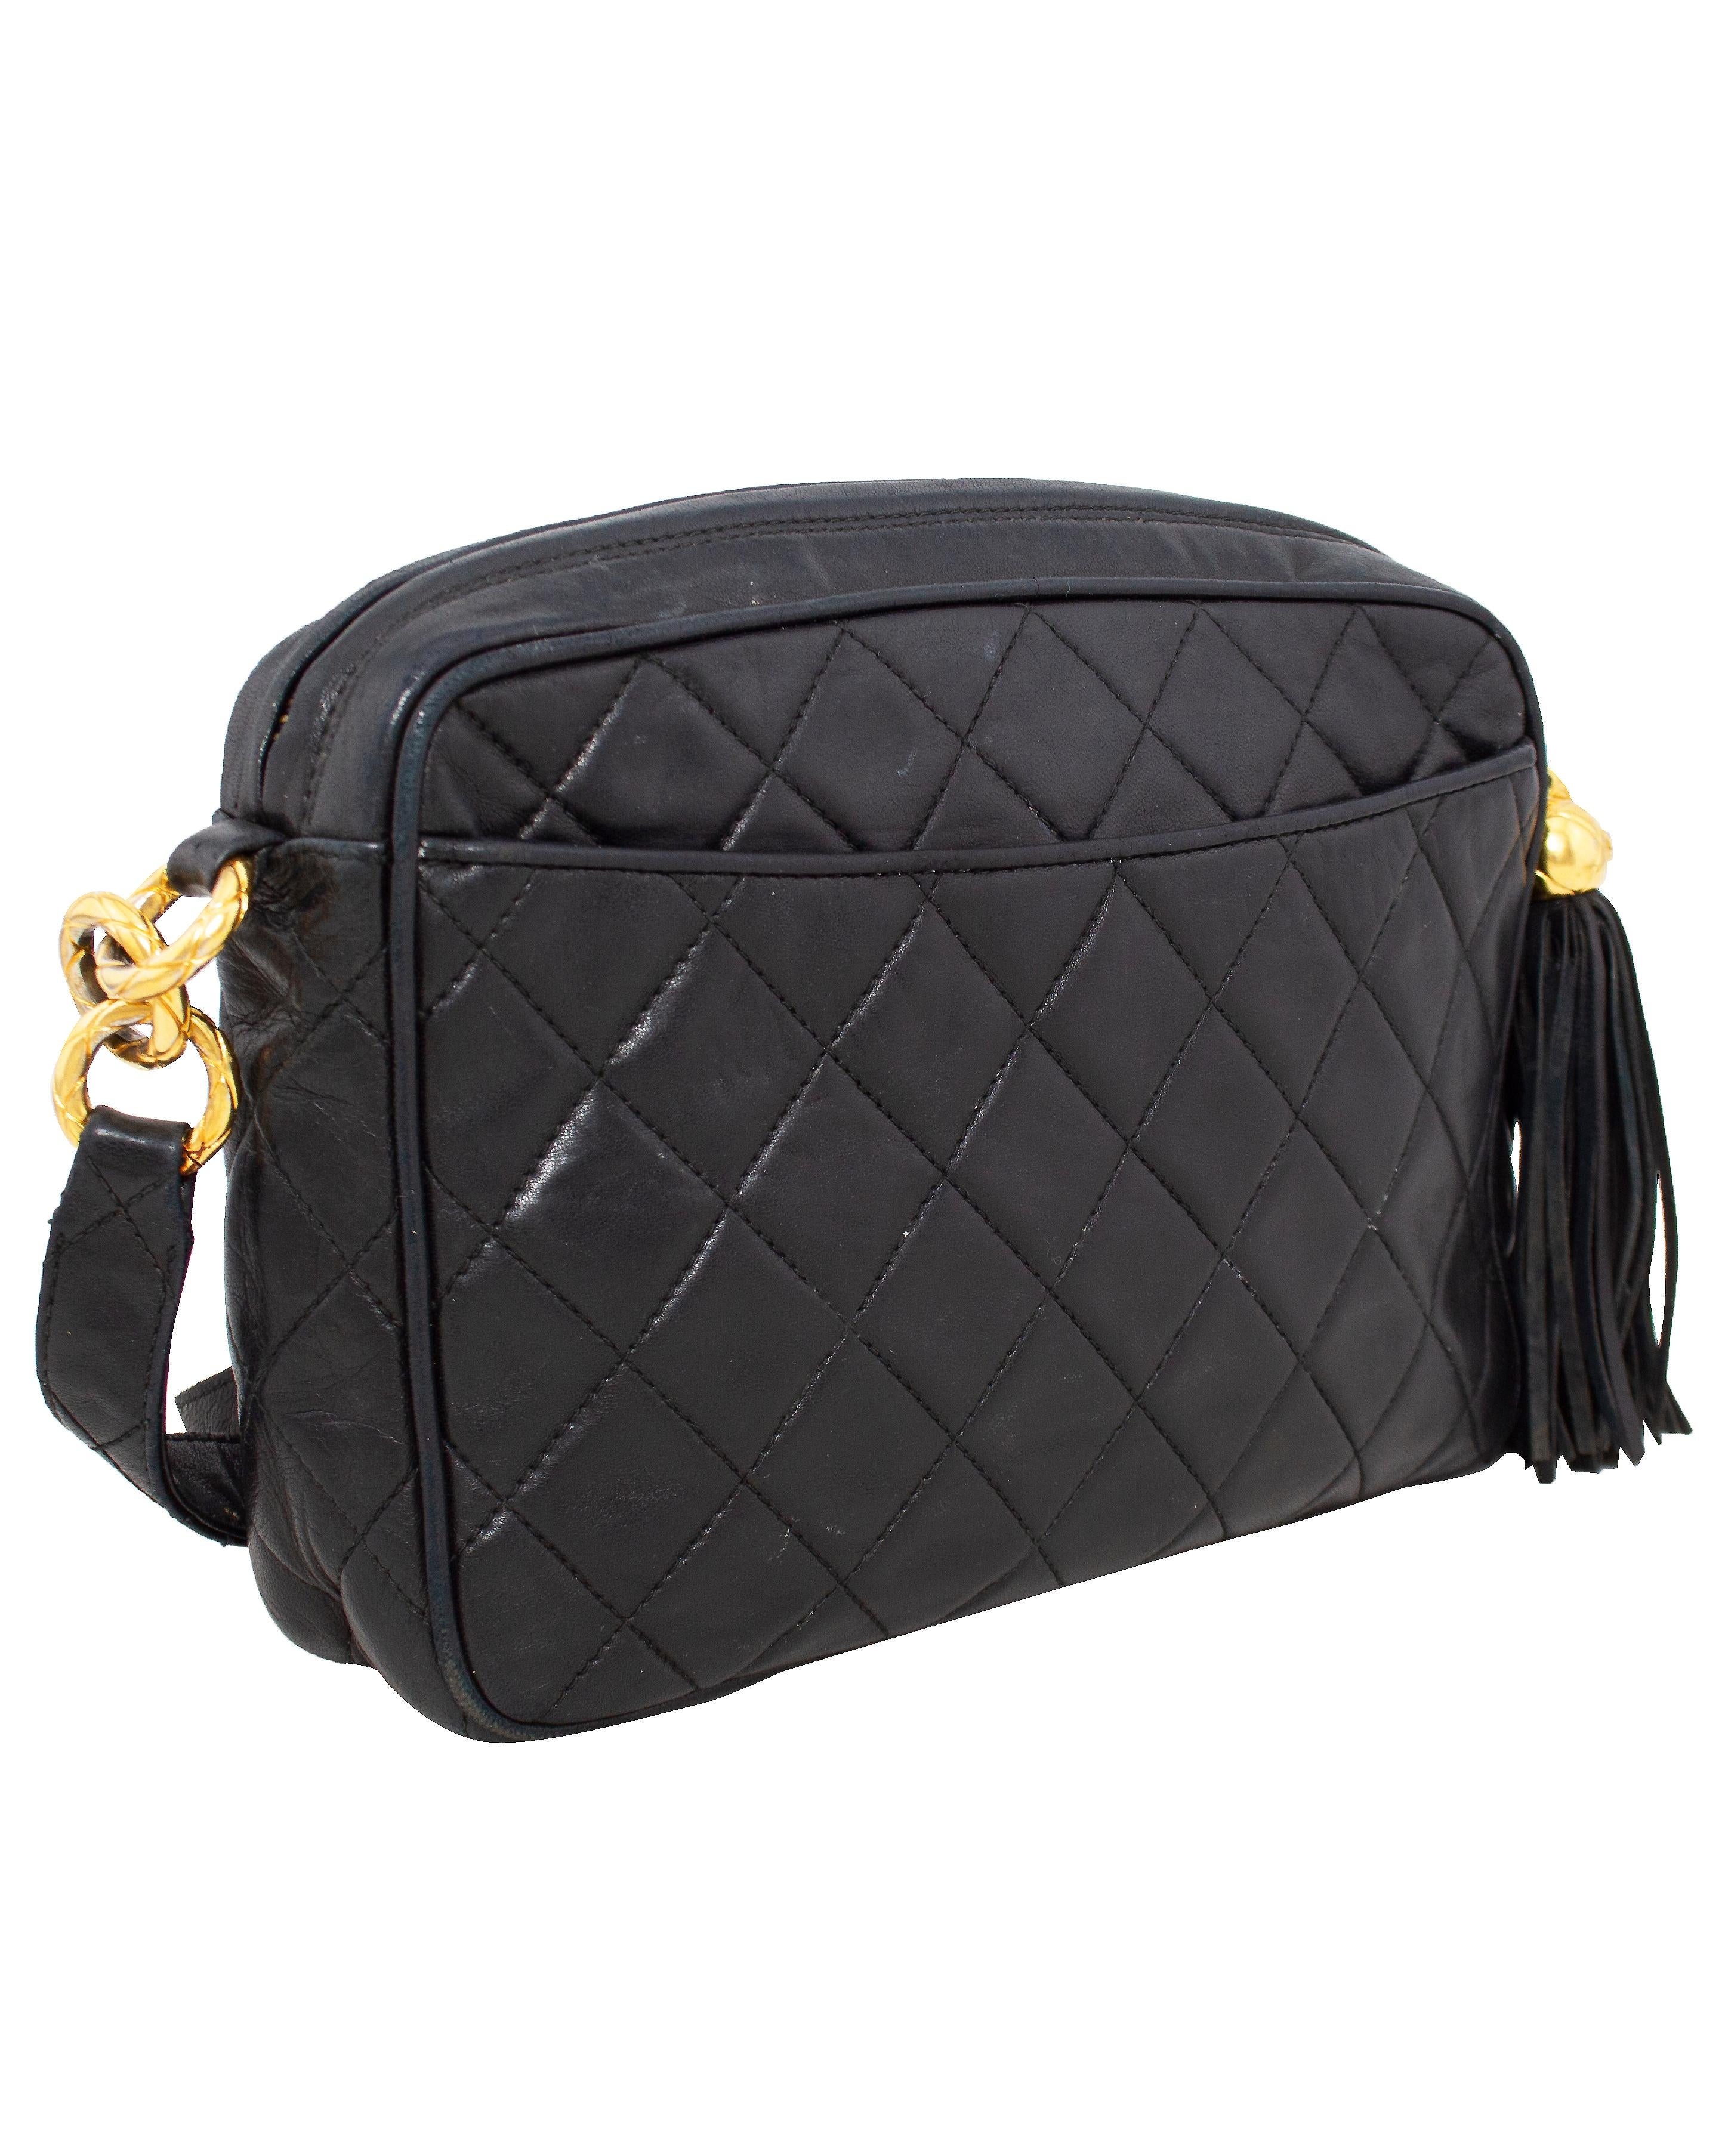 Eine klassische und zeitlose Chanel-Tasche aus den 1980er Jahren. Schwarzes gestepptes Leder mit kontrastierenden goldfarbenen Beschlägen und einem gesteppten Lederriemen. Das ist eine großartige, funktionelle und dennoch schicke Tasche mit offenen